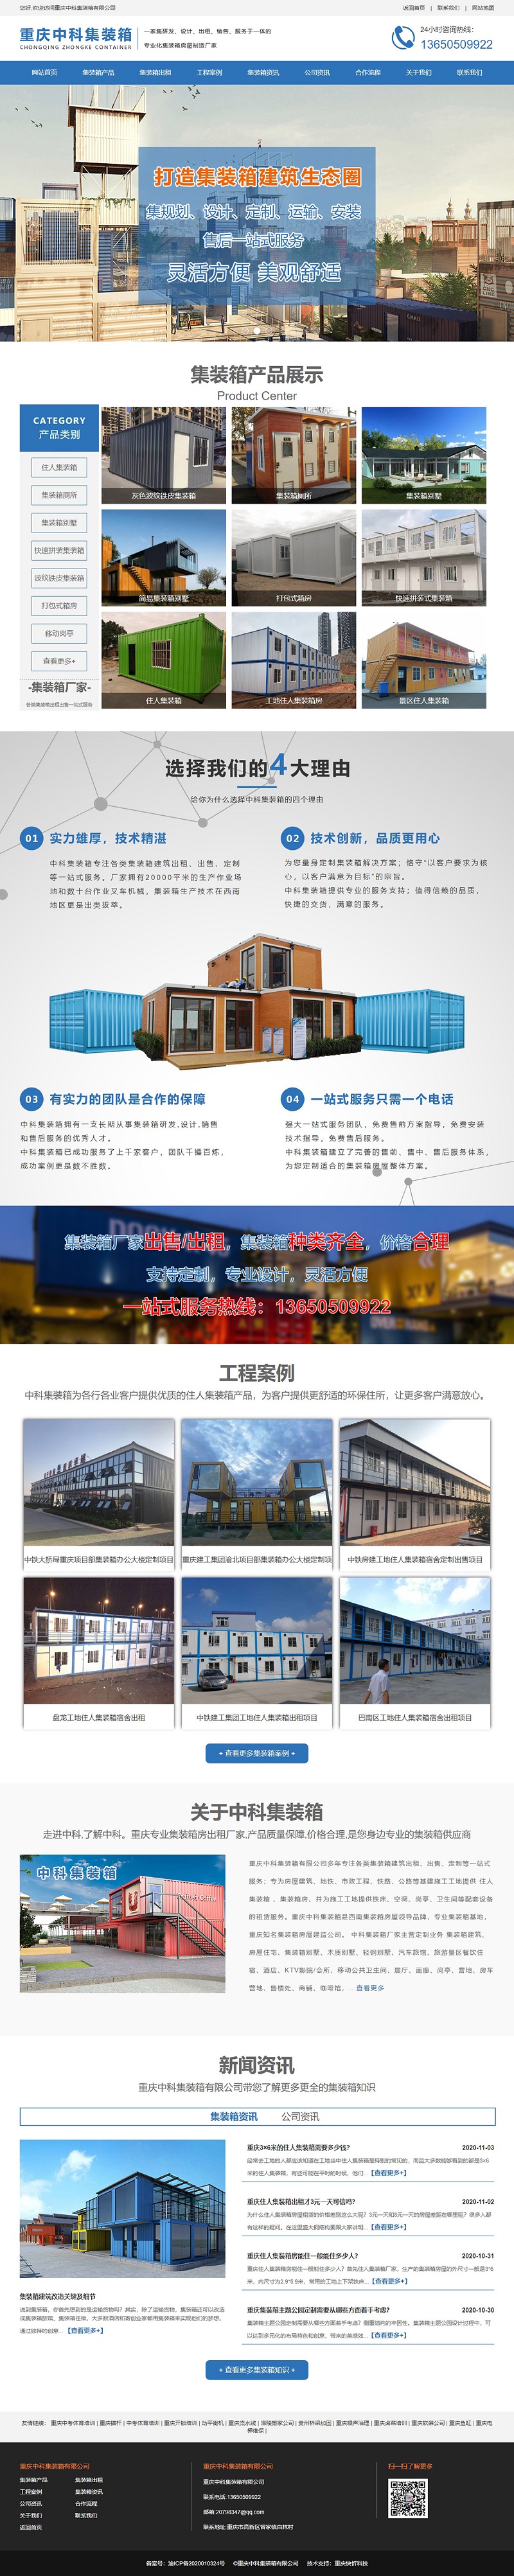 重庆中科集装箱有限公司网站建设案例